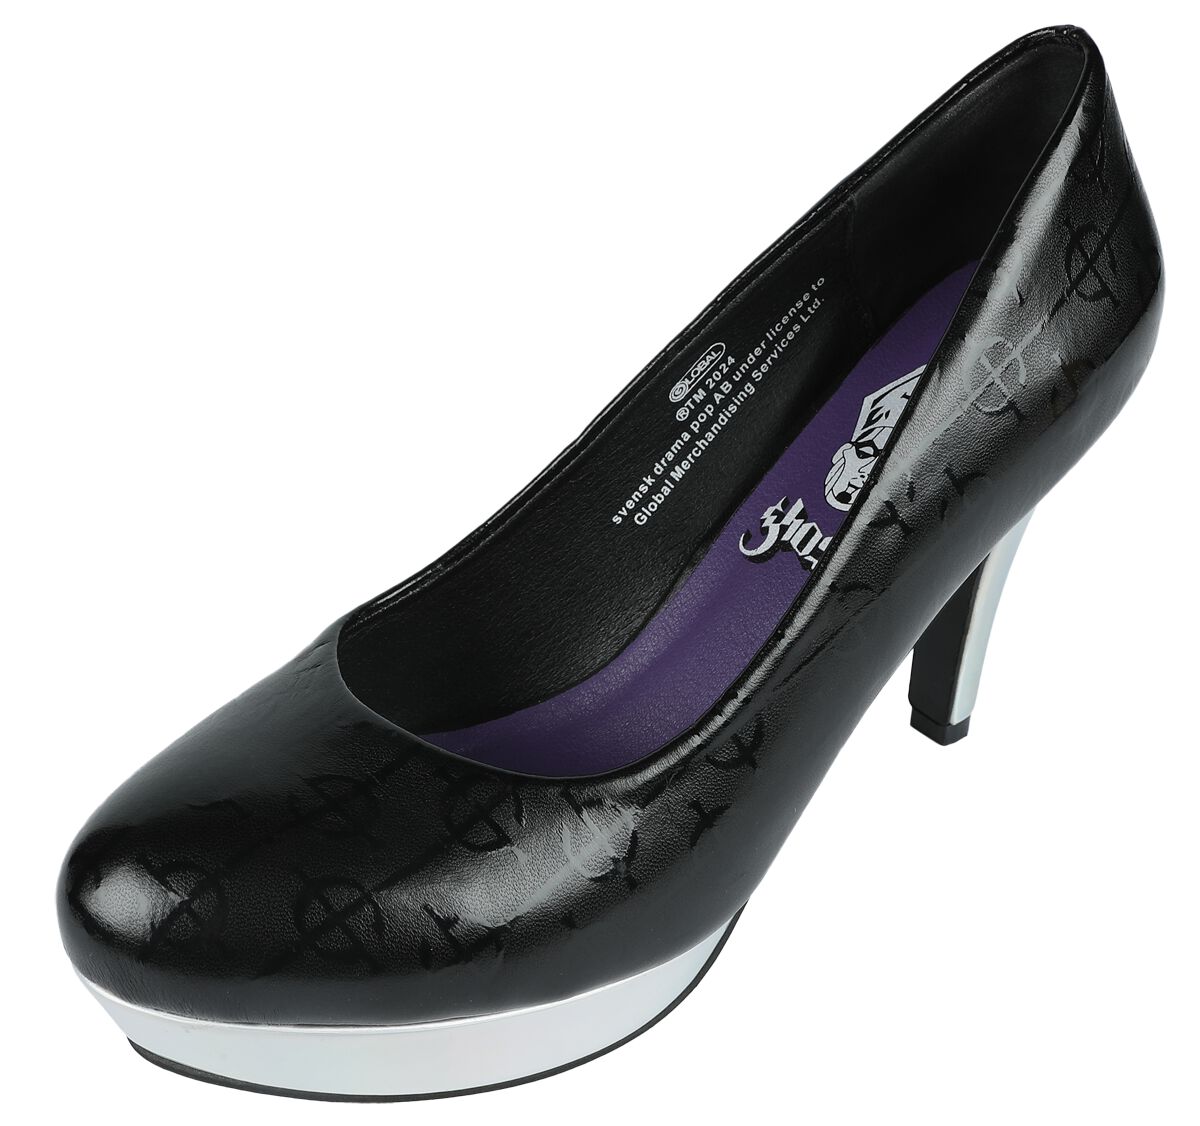 Ghost High Heel - EMP Signature Collection - EU37 bis EU41 - für Damen - Größe EU38 - schwarz/silberfarben  - EMP exklusives Merchandise!